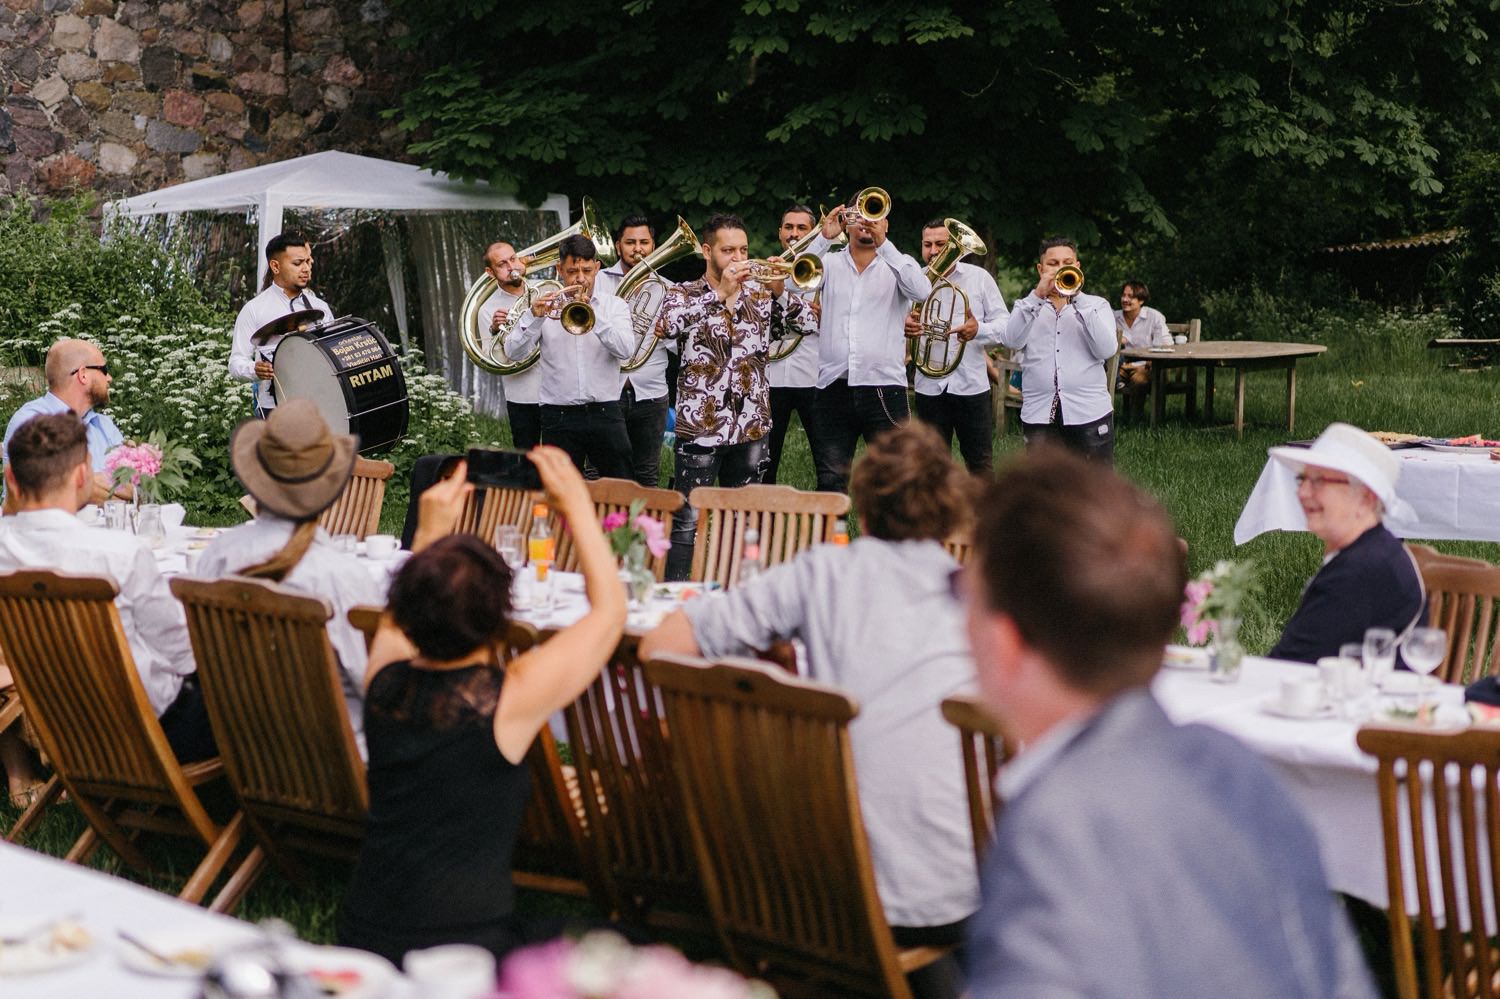 Eine Blaskapelle vom Balkan beginnt am Nachmittag zu spielen und verbreitet sofort eine ausgelassene Stimmung. Mit ihren mitreißenden Melodien und ihrem energiegeladenen Rhythmus bringen sie die Gäste zum Tanzen und Feiern, während sie die festliche Atmosphäre der Hochzeit weiter anheizen.